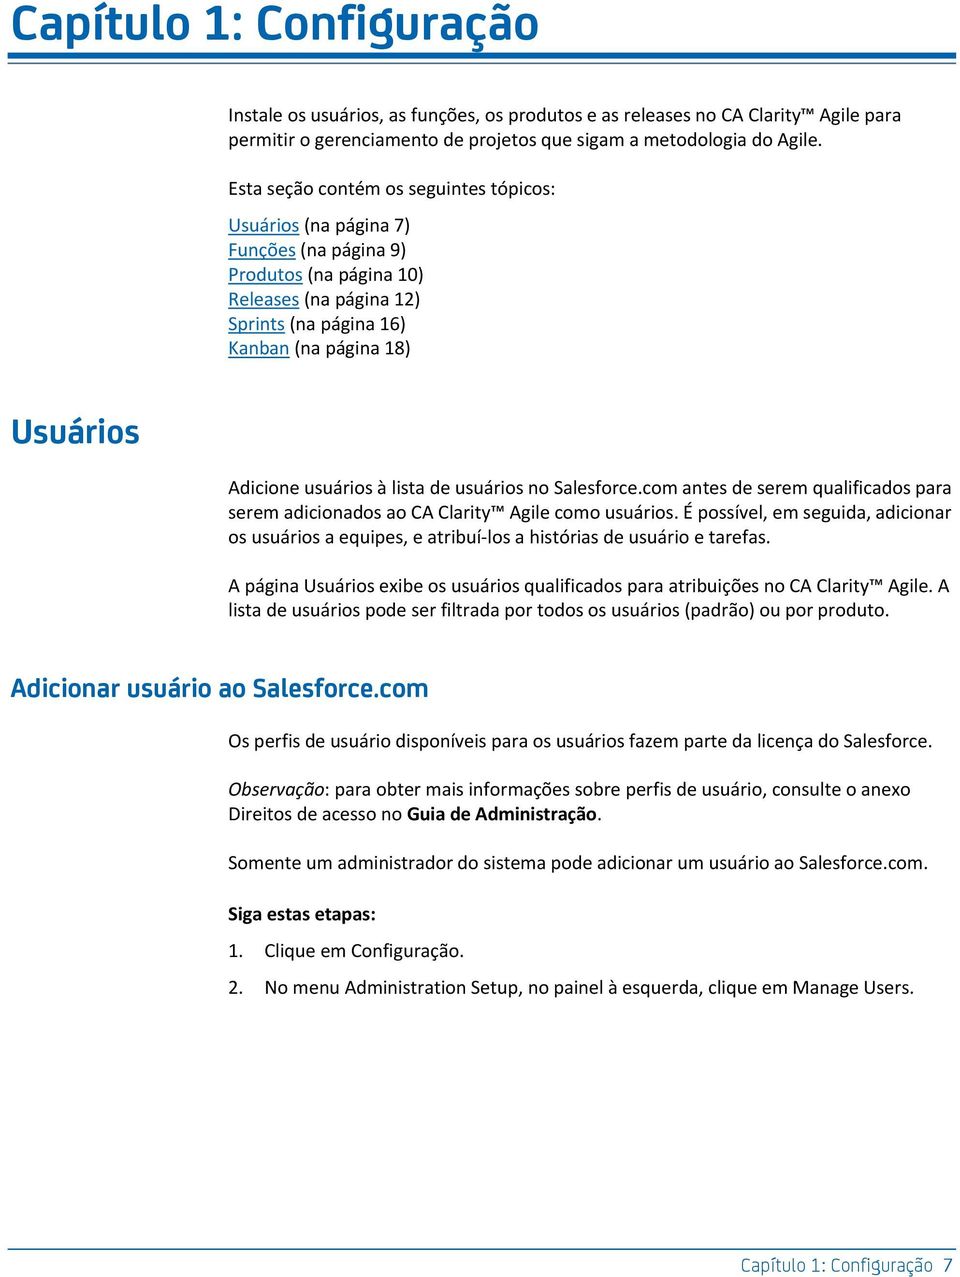 usuários à lista de usuários no Salesforce.com antes de serem qualificados para serem adicionados ao CA Clarity Agile como usuários.